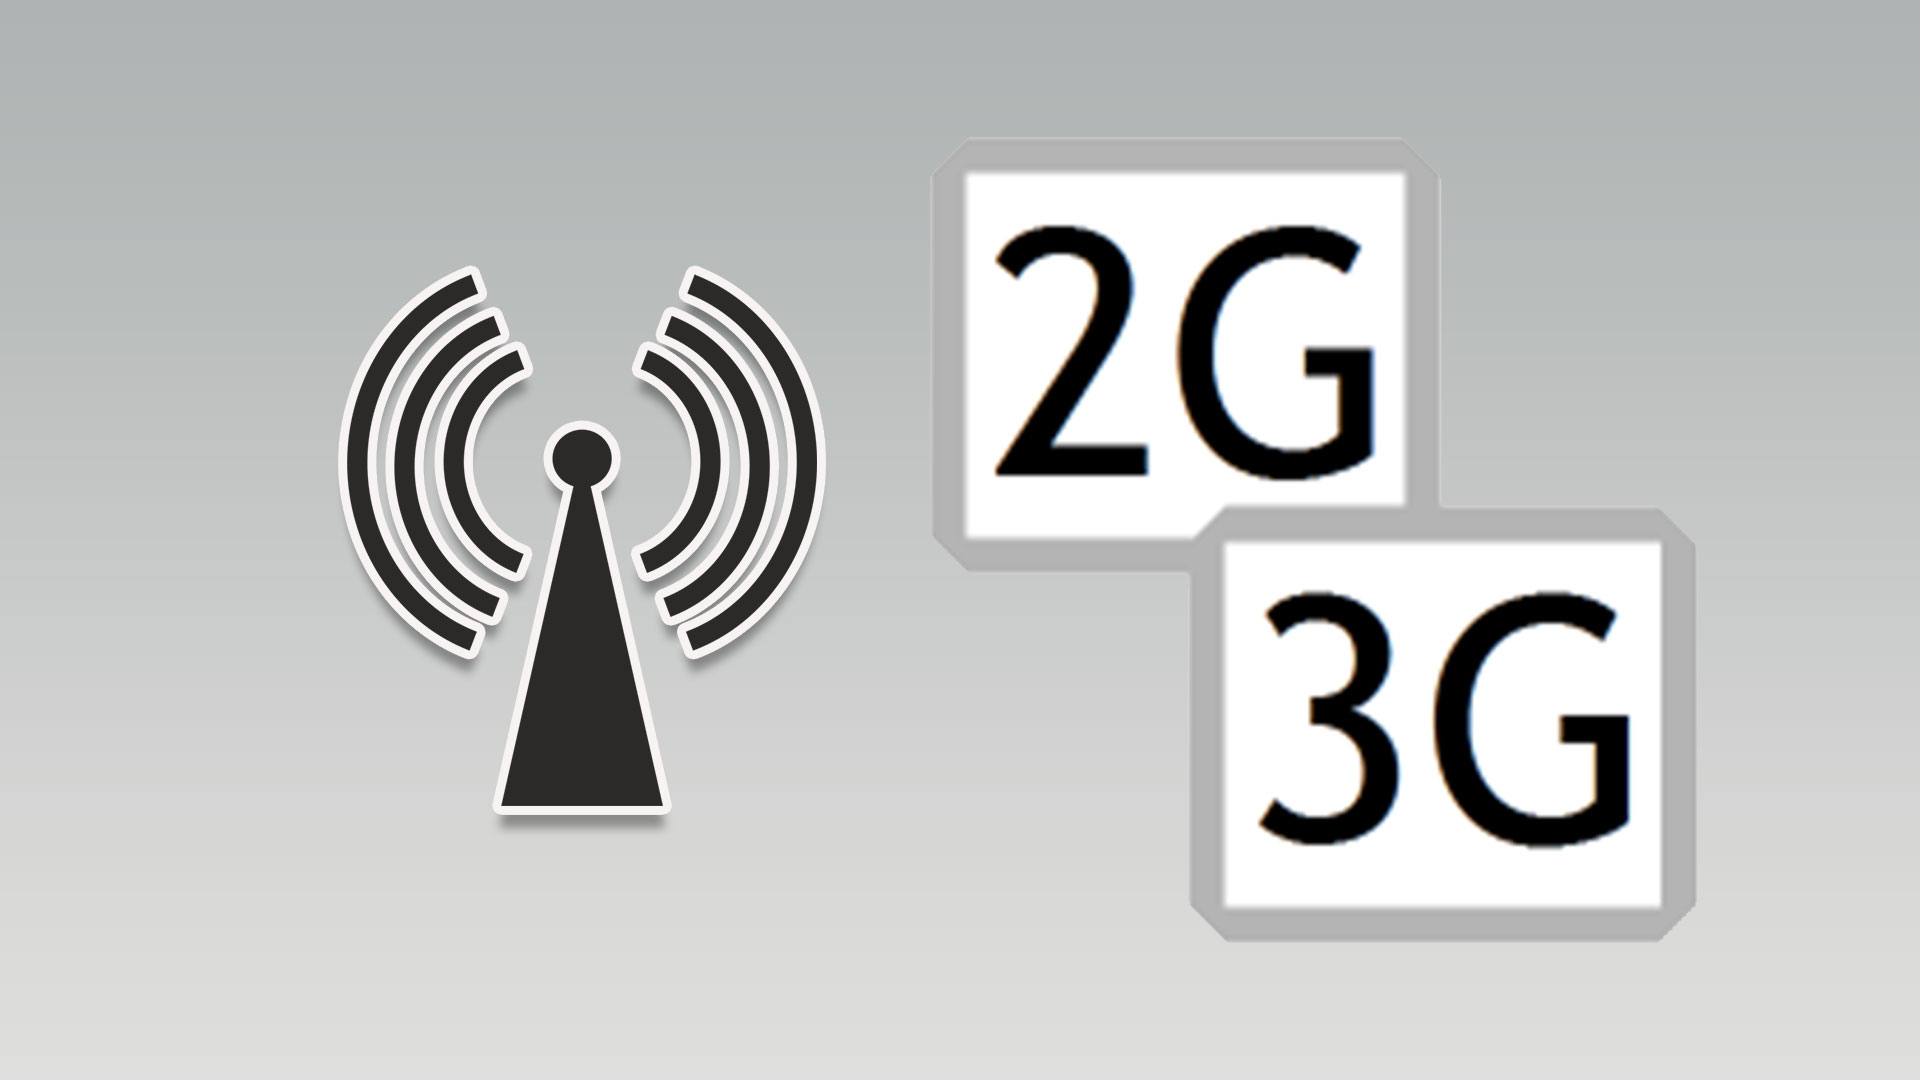 برگرداندن آنتن در شبکه 2G و 3G